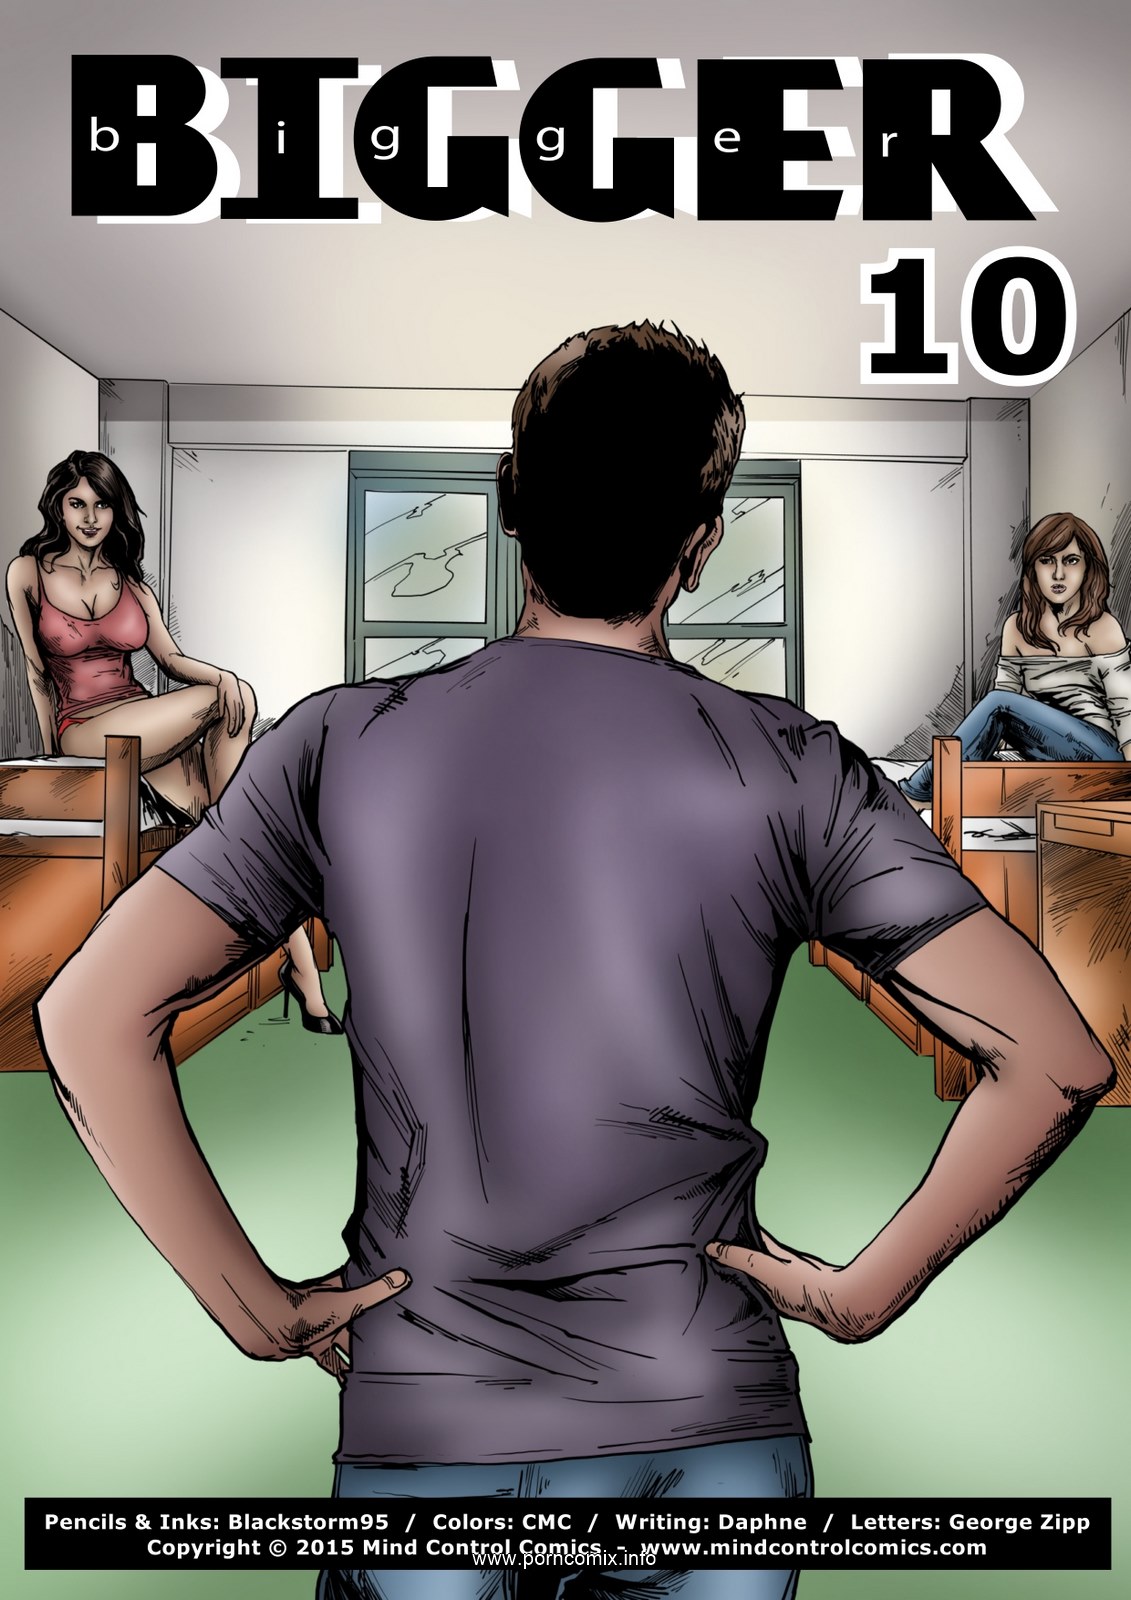 Porn Comics - Bigger 10- Mind Control porn comics 8 muses